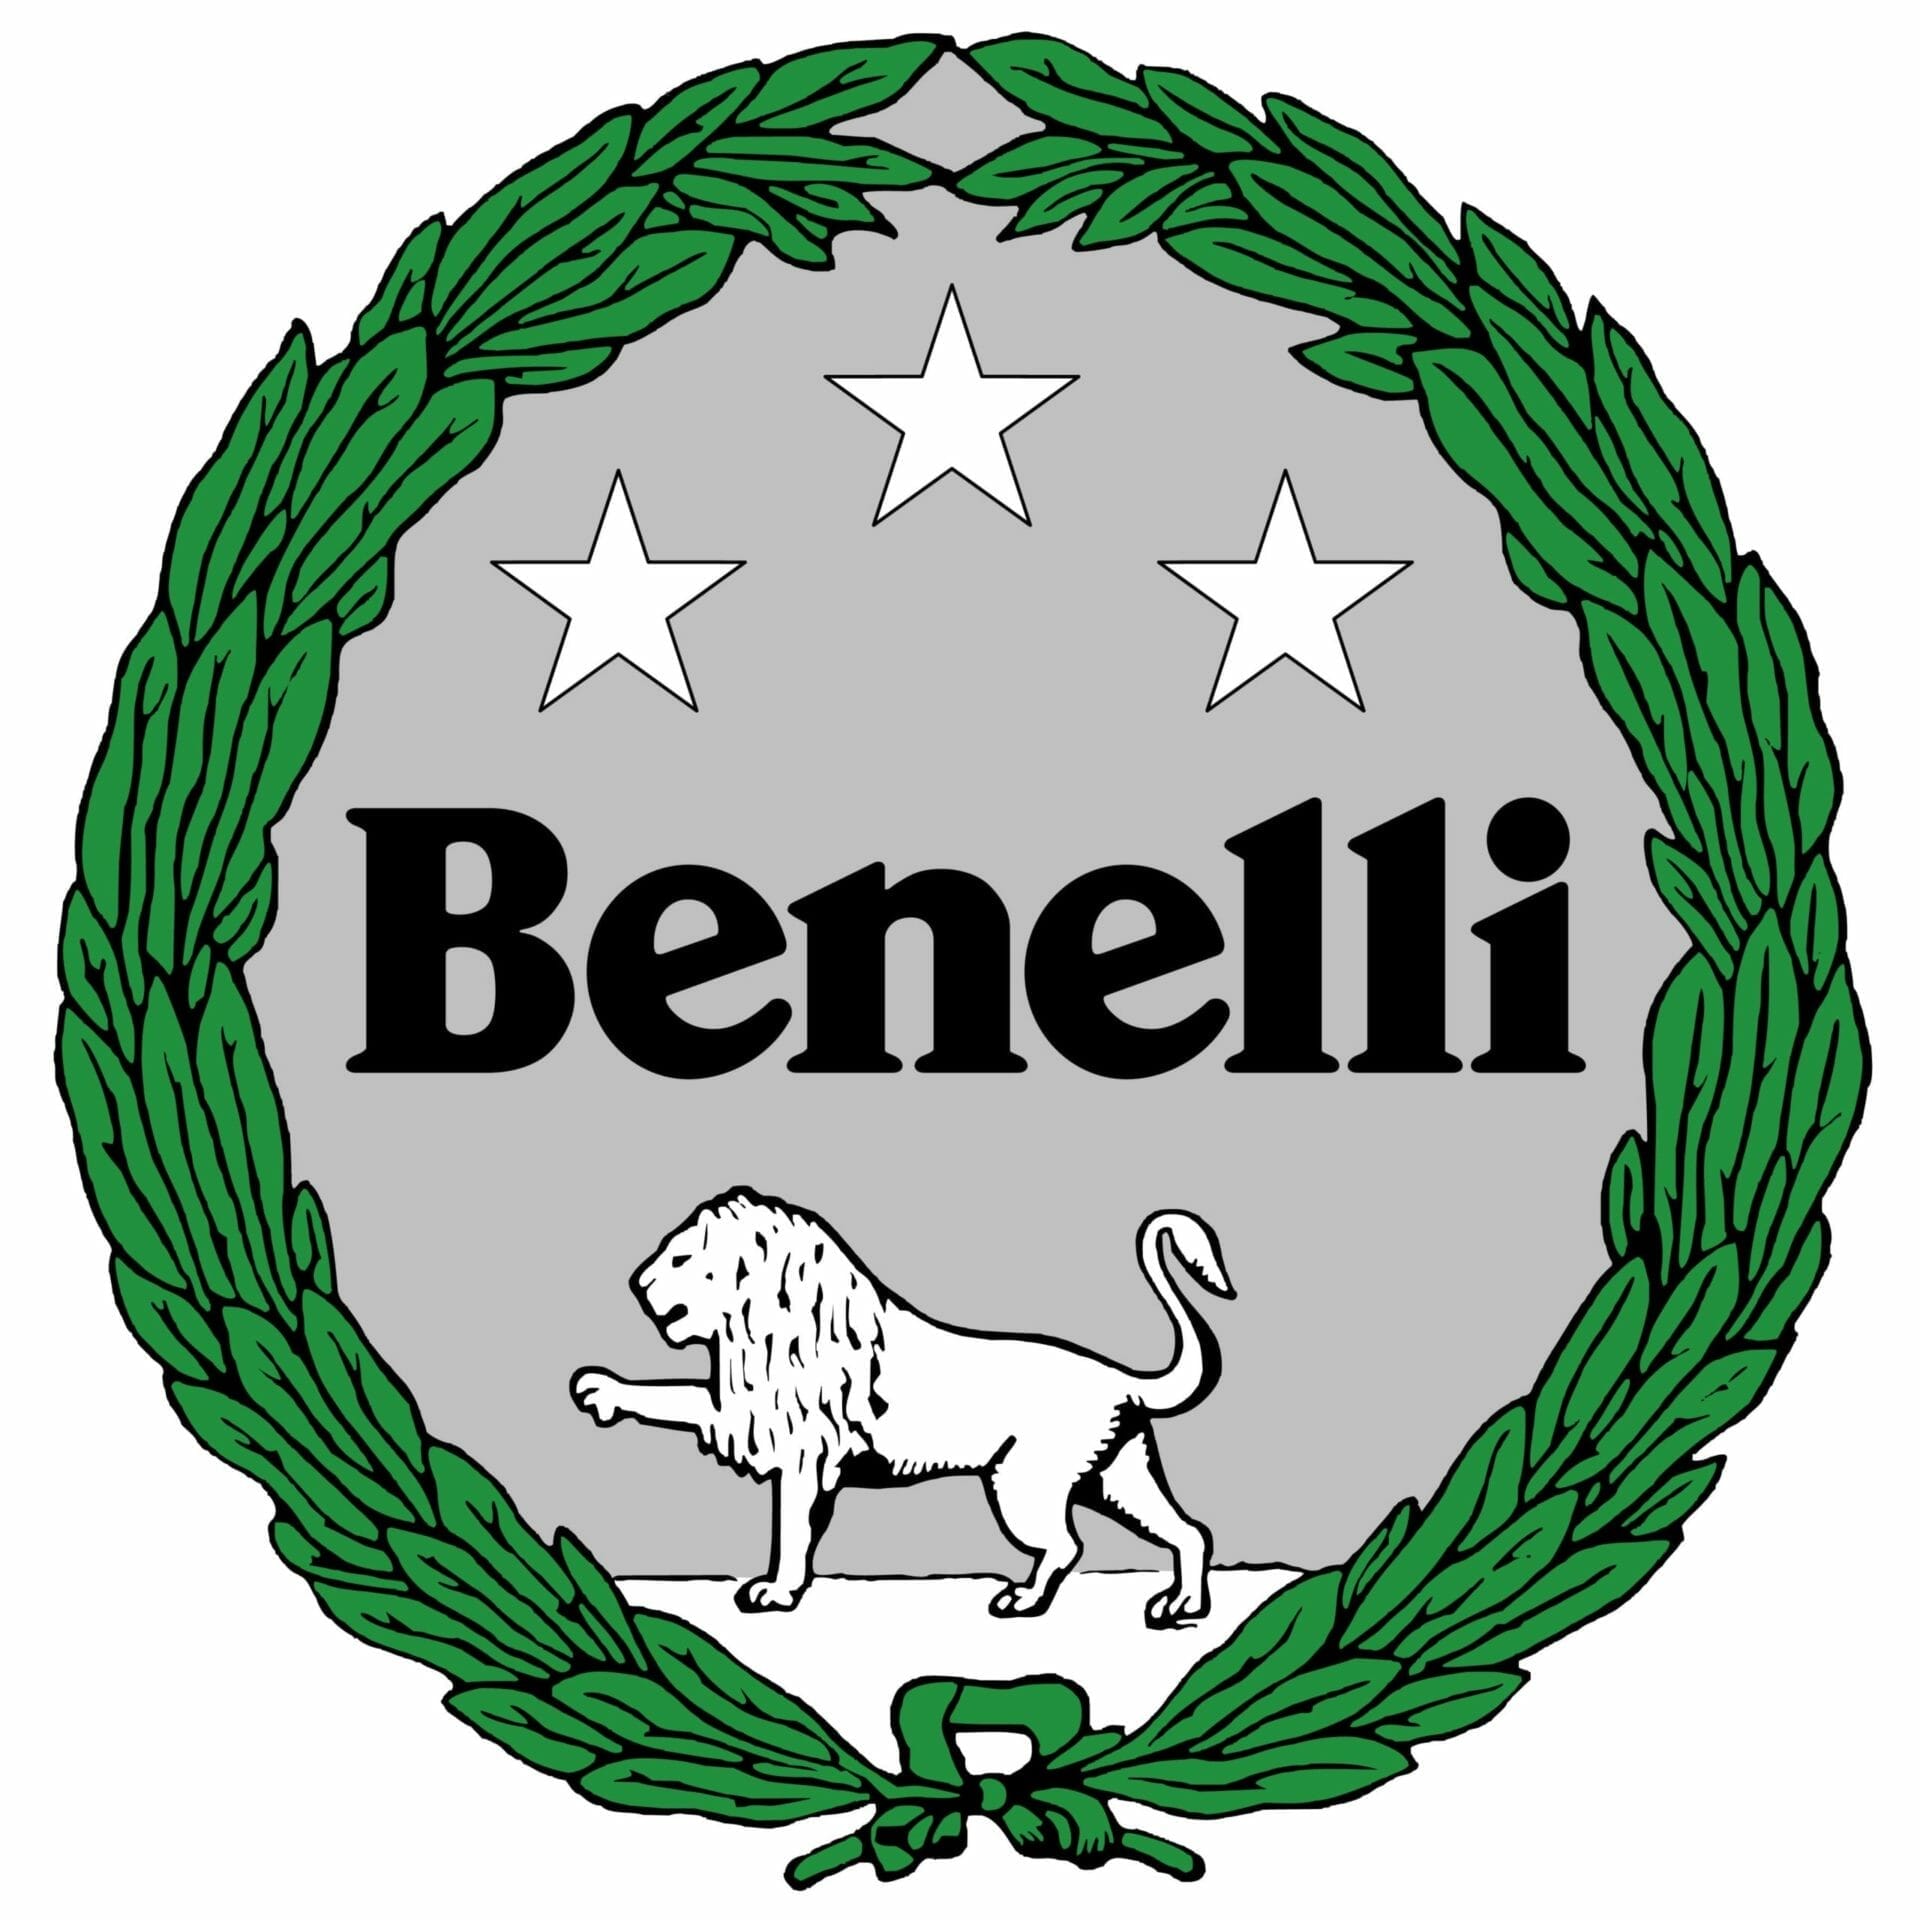 #Benelli möchte noch dieses Jahr mehrere noch nicht vorgestellte Modelle veröffentlichen
- auch in der Motorrad Nachrichten App